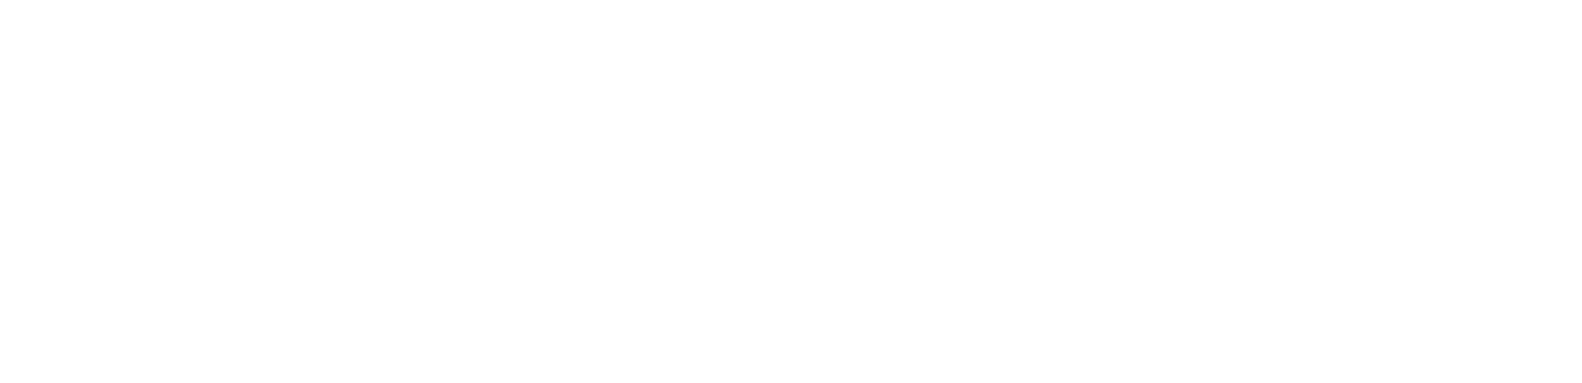 BillerudKorsnäs logo large for dark backgrounds (transparent PNG)